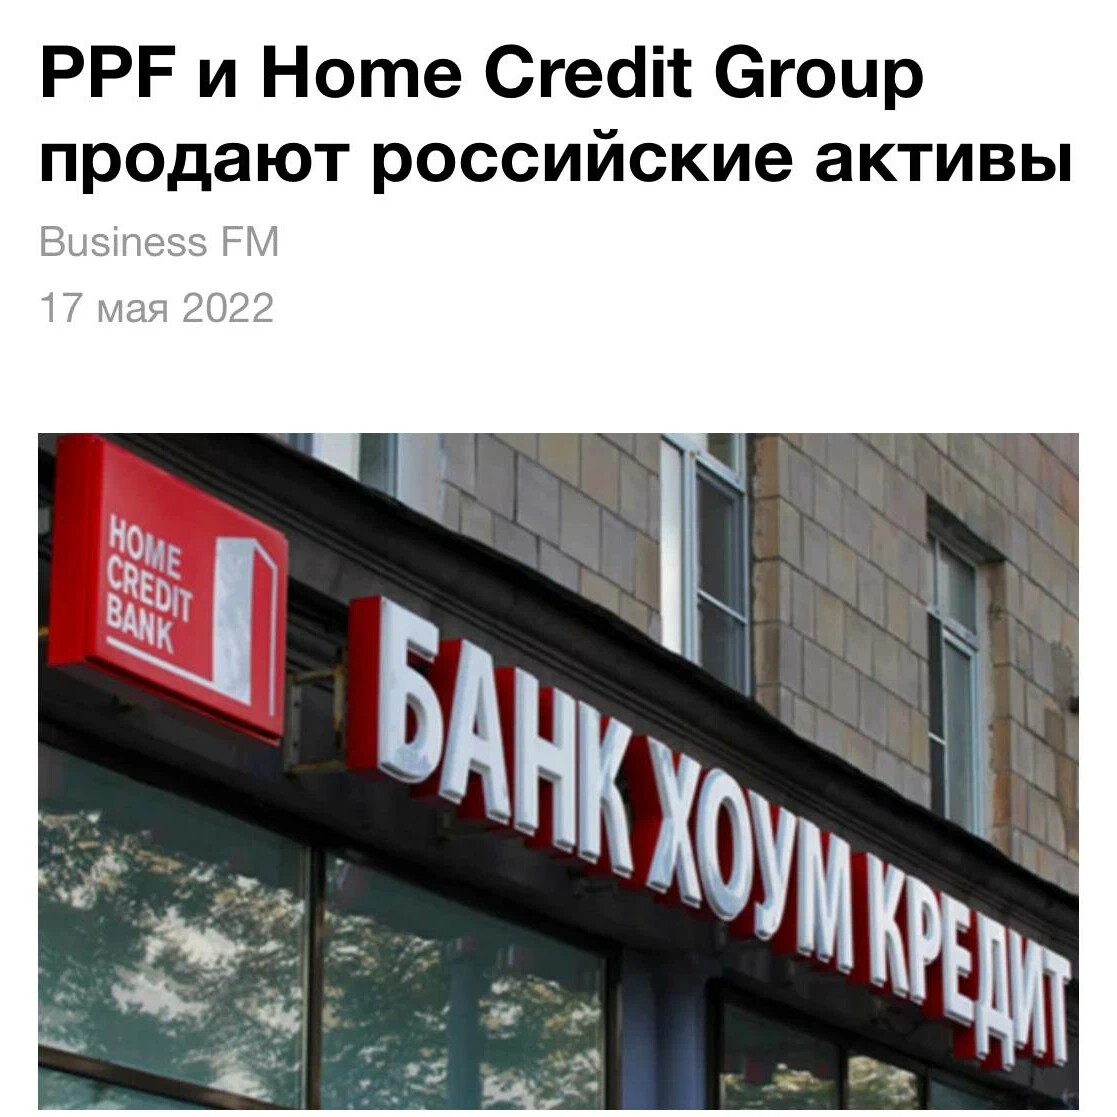 Home credit Bank Гарик Варламов Свобода. Независимый кредитный банк